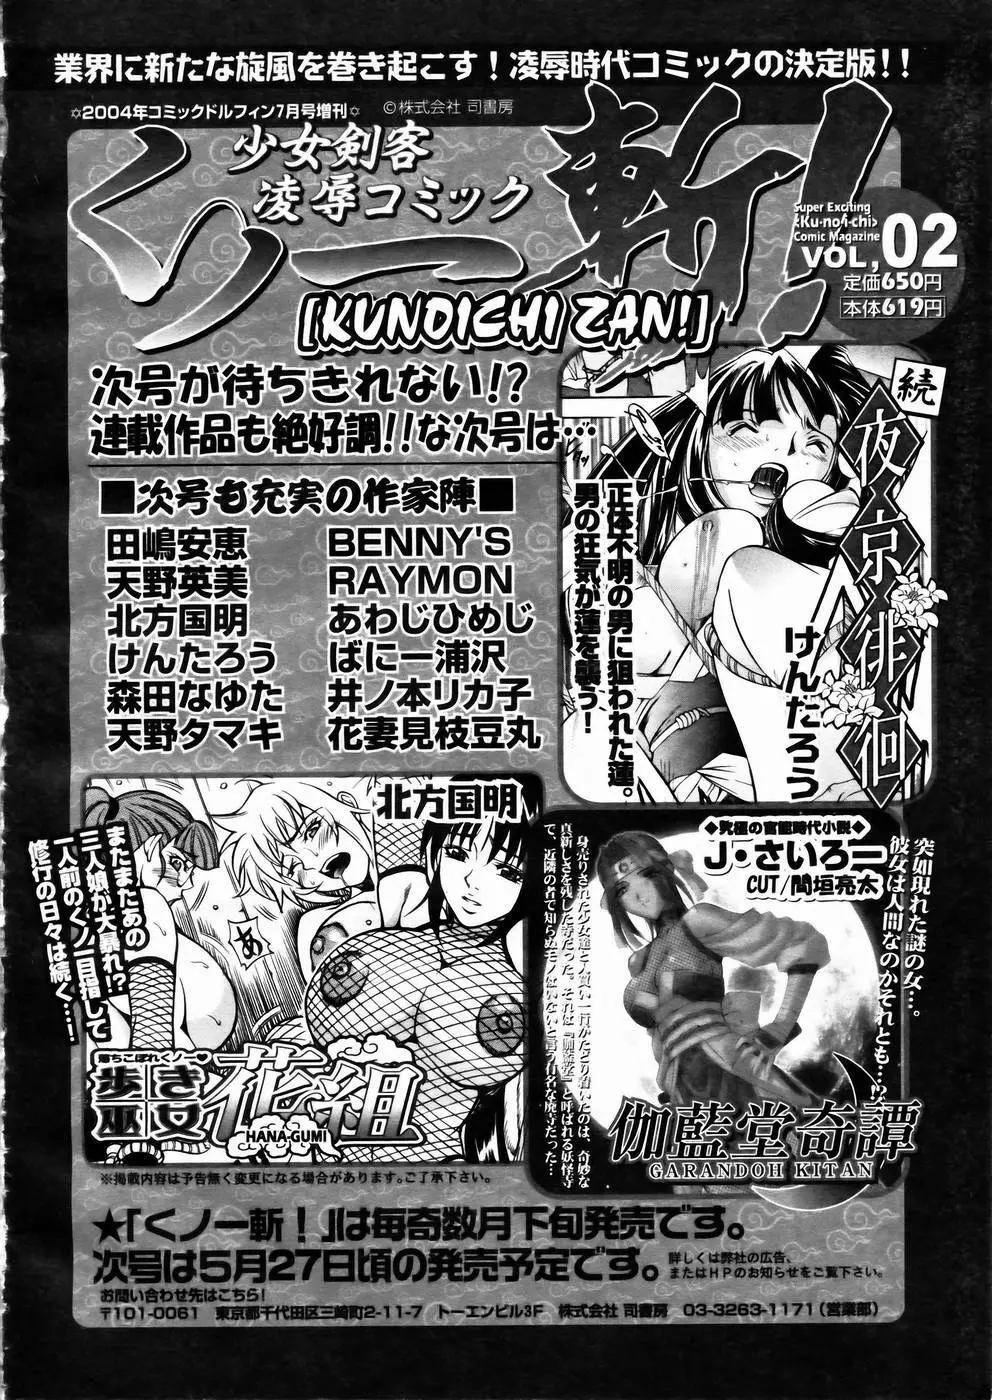 少女剣客凌辱コミック Vol.01 くノ一斬! 191ページ